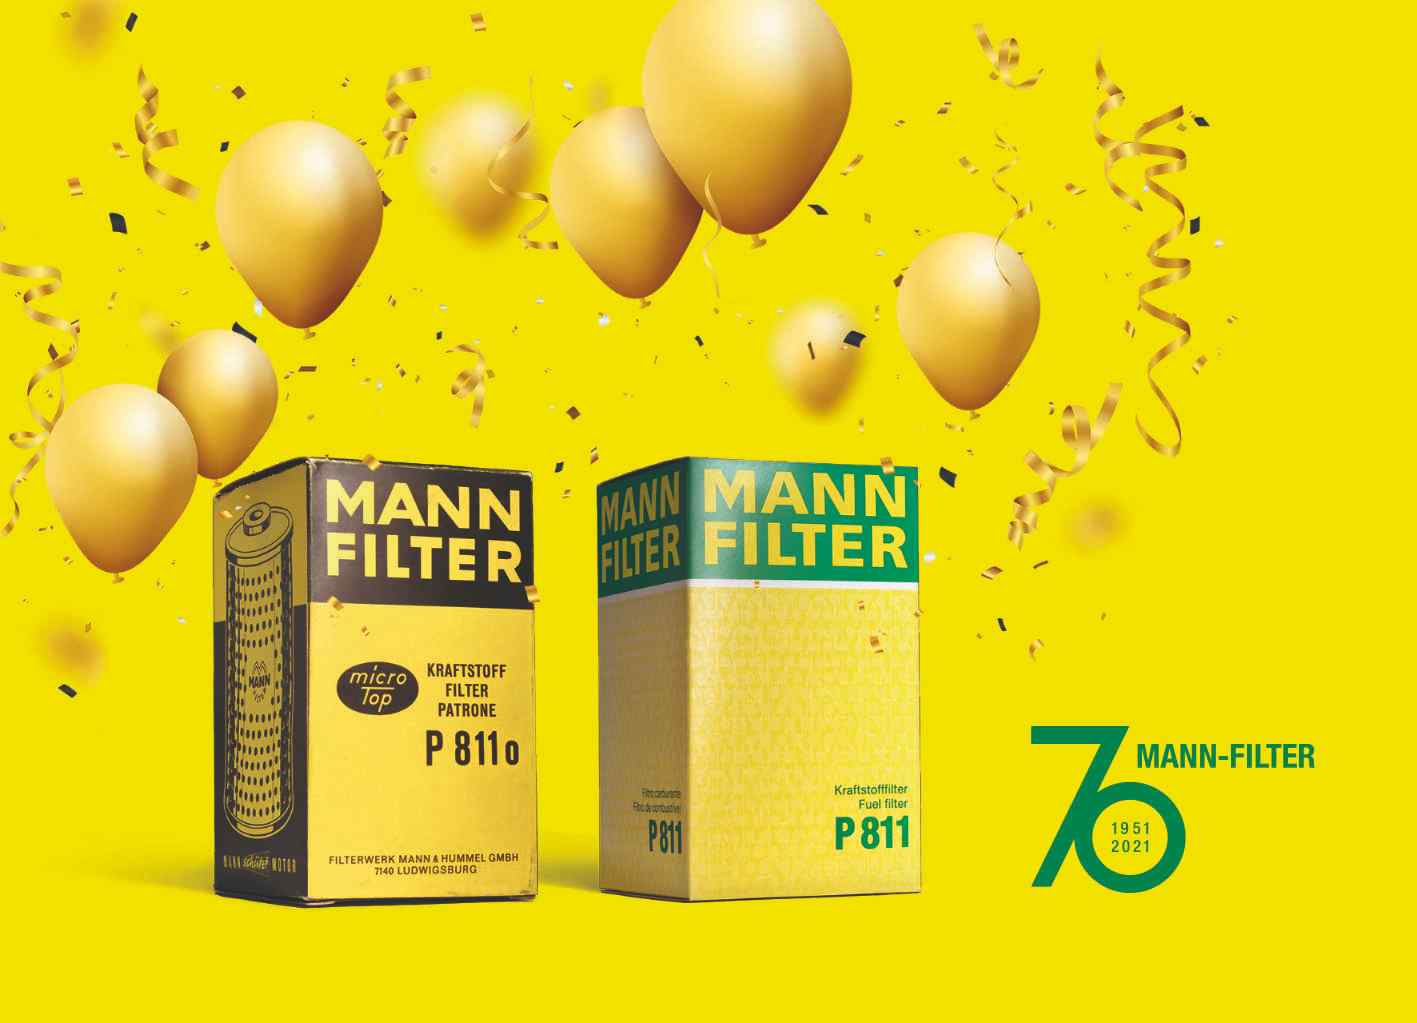 MANN-FILTER comemora 70 anos 